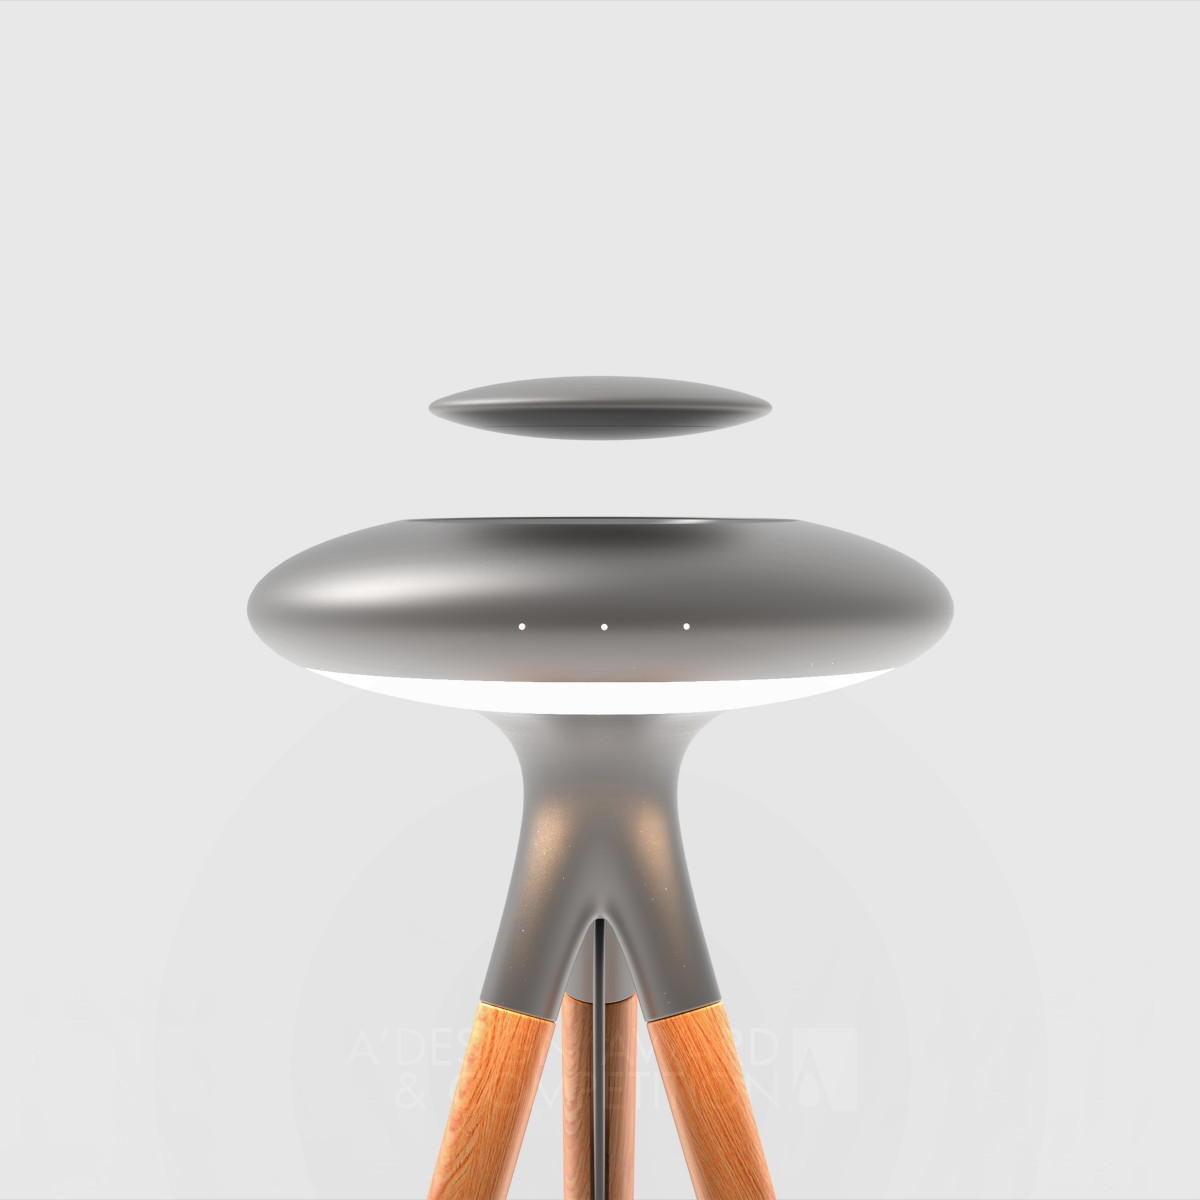 फ्लोट: एक अनुभवी डिजाइनर ग्वांगपेंग युए द्वारा डिज़ाइन की गई एक अद्वितीय प्रकाश यंत्र